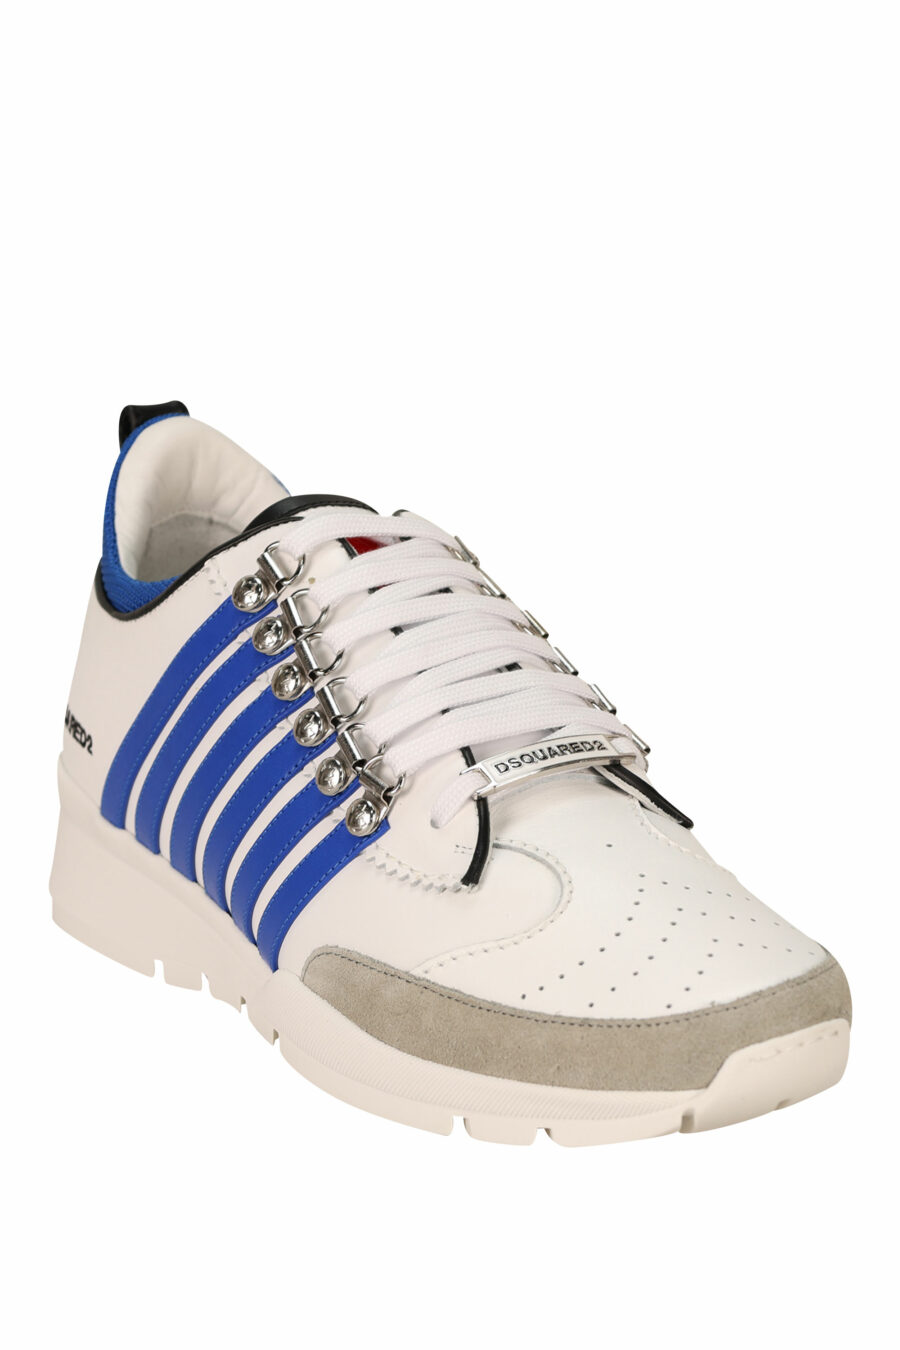 Zapatillas blancas con lineas azules y suela blanca - 8055777301036 1